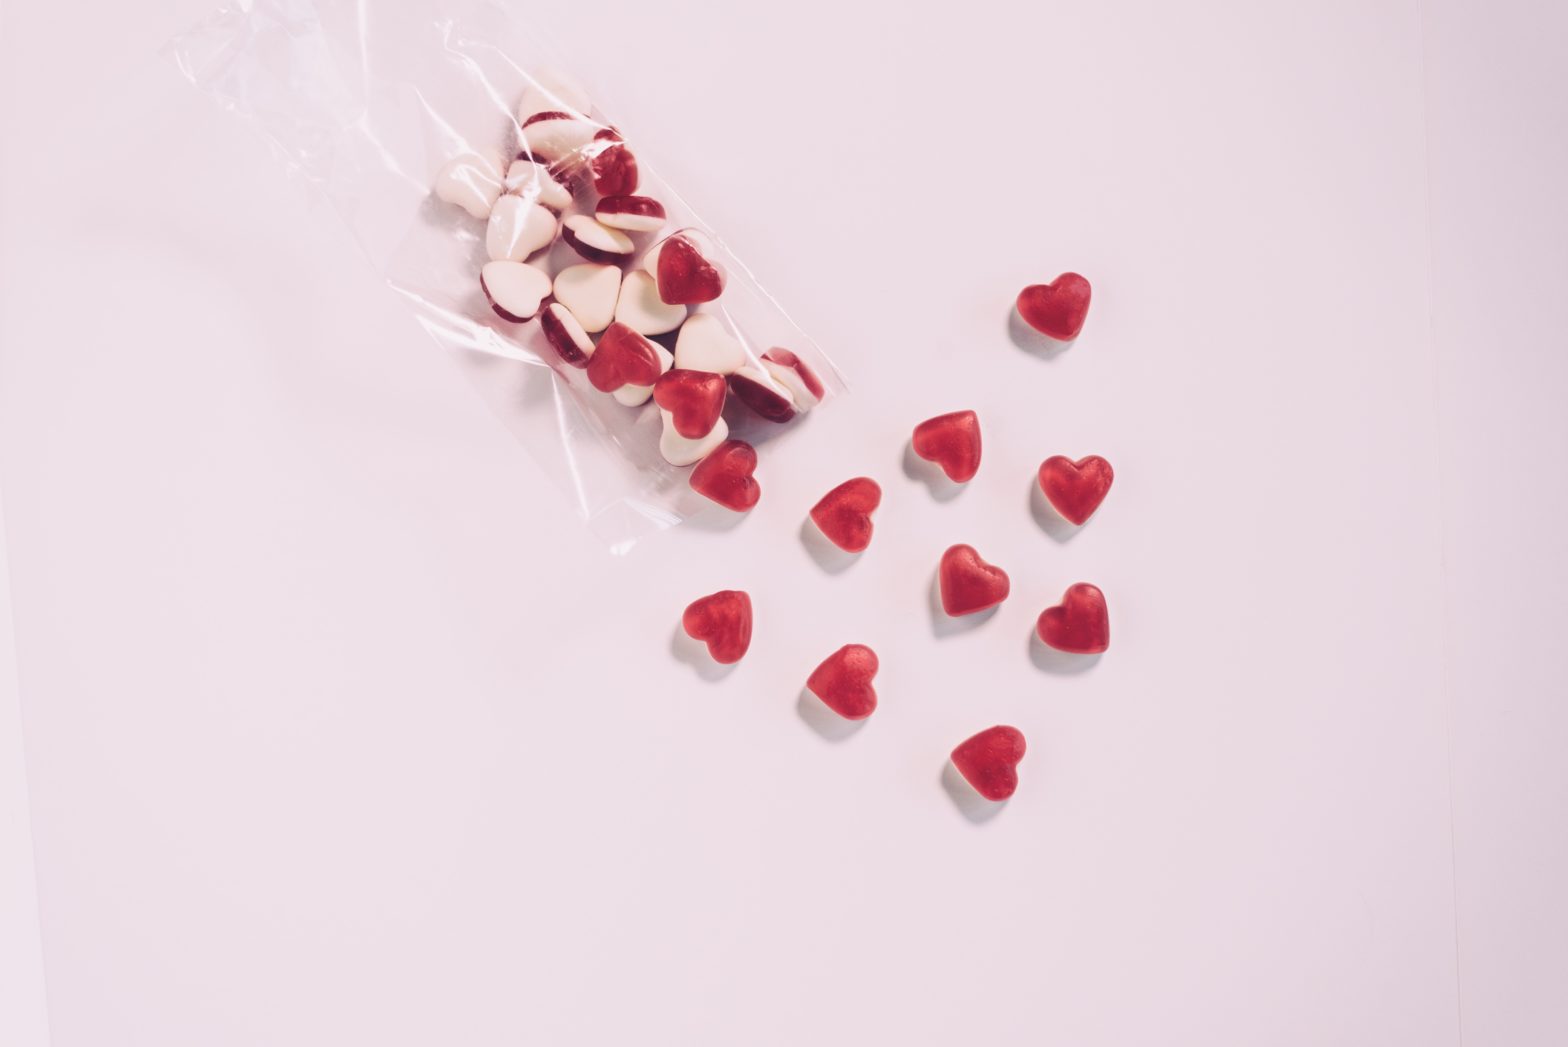 Heart-shaped Valentine's Day treats